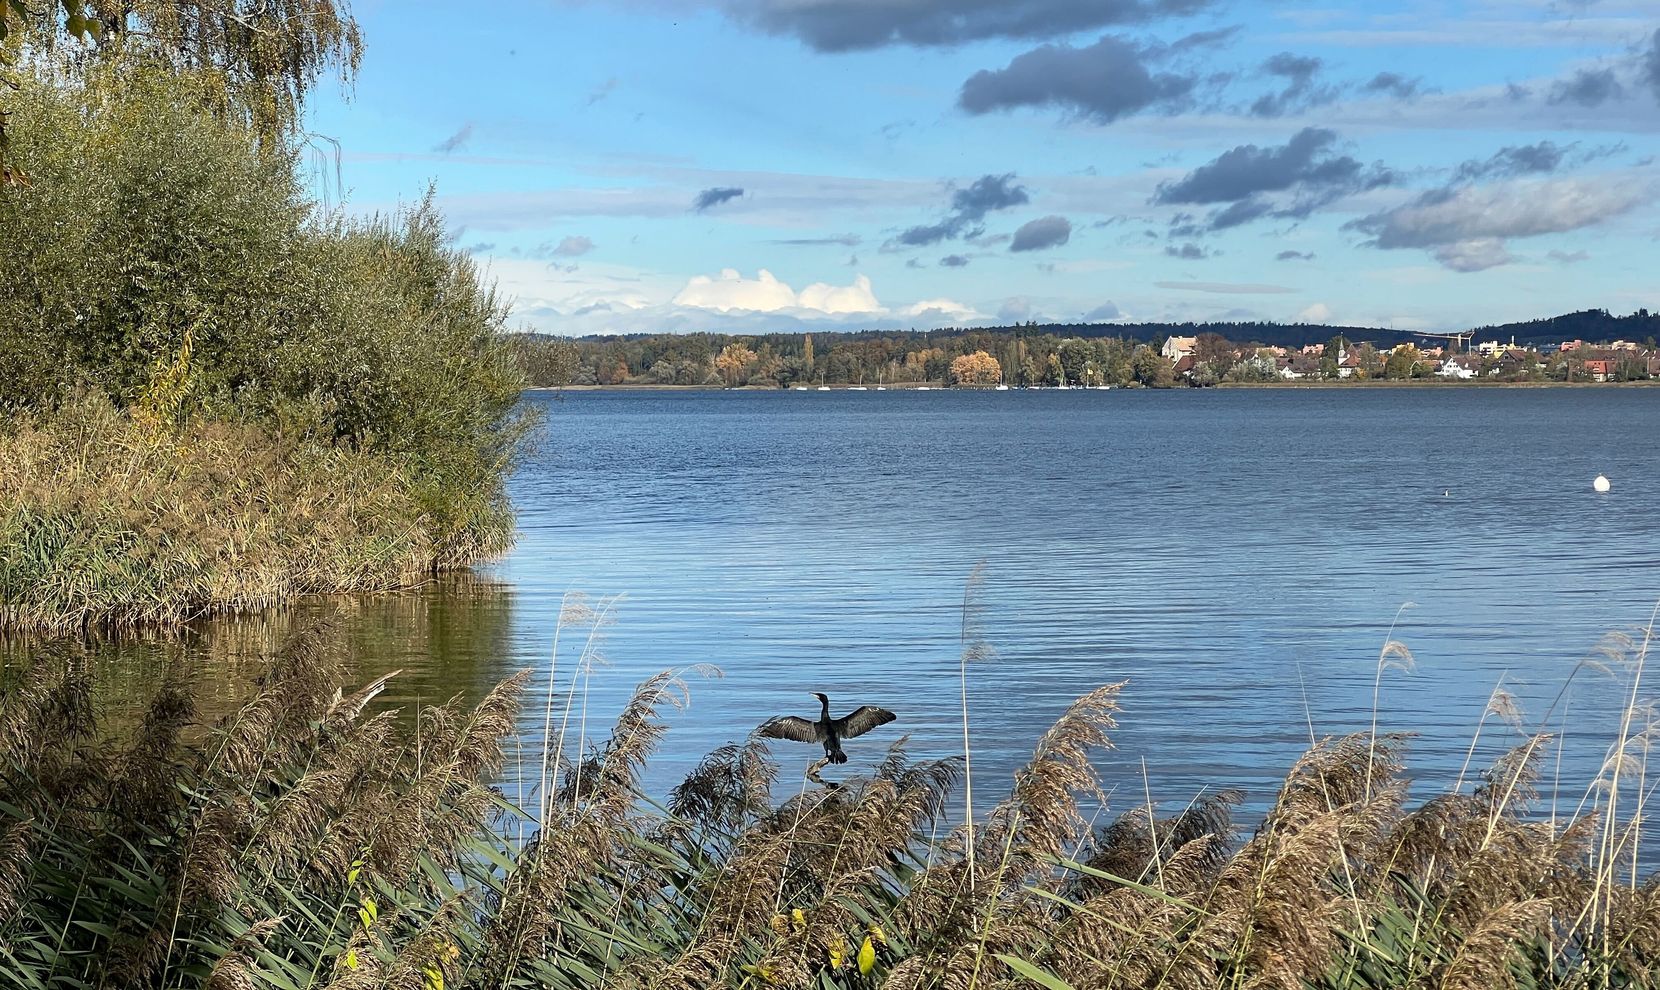 Man sieht im Vordergrund einen Schilfgürtel vor dem Greifensee. Direkt vor dem Ufer auf dem See sonnt sich ein Kormoran und trocknet seine Flügel im Wind.